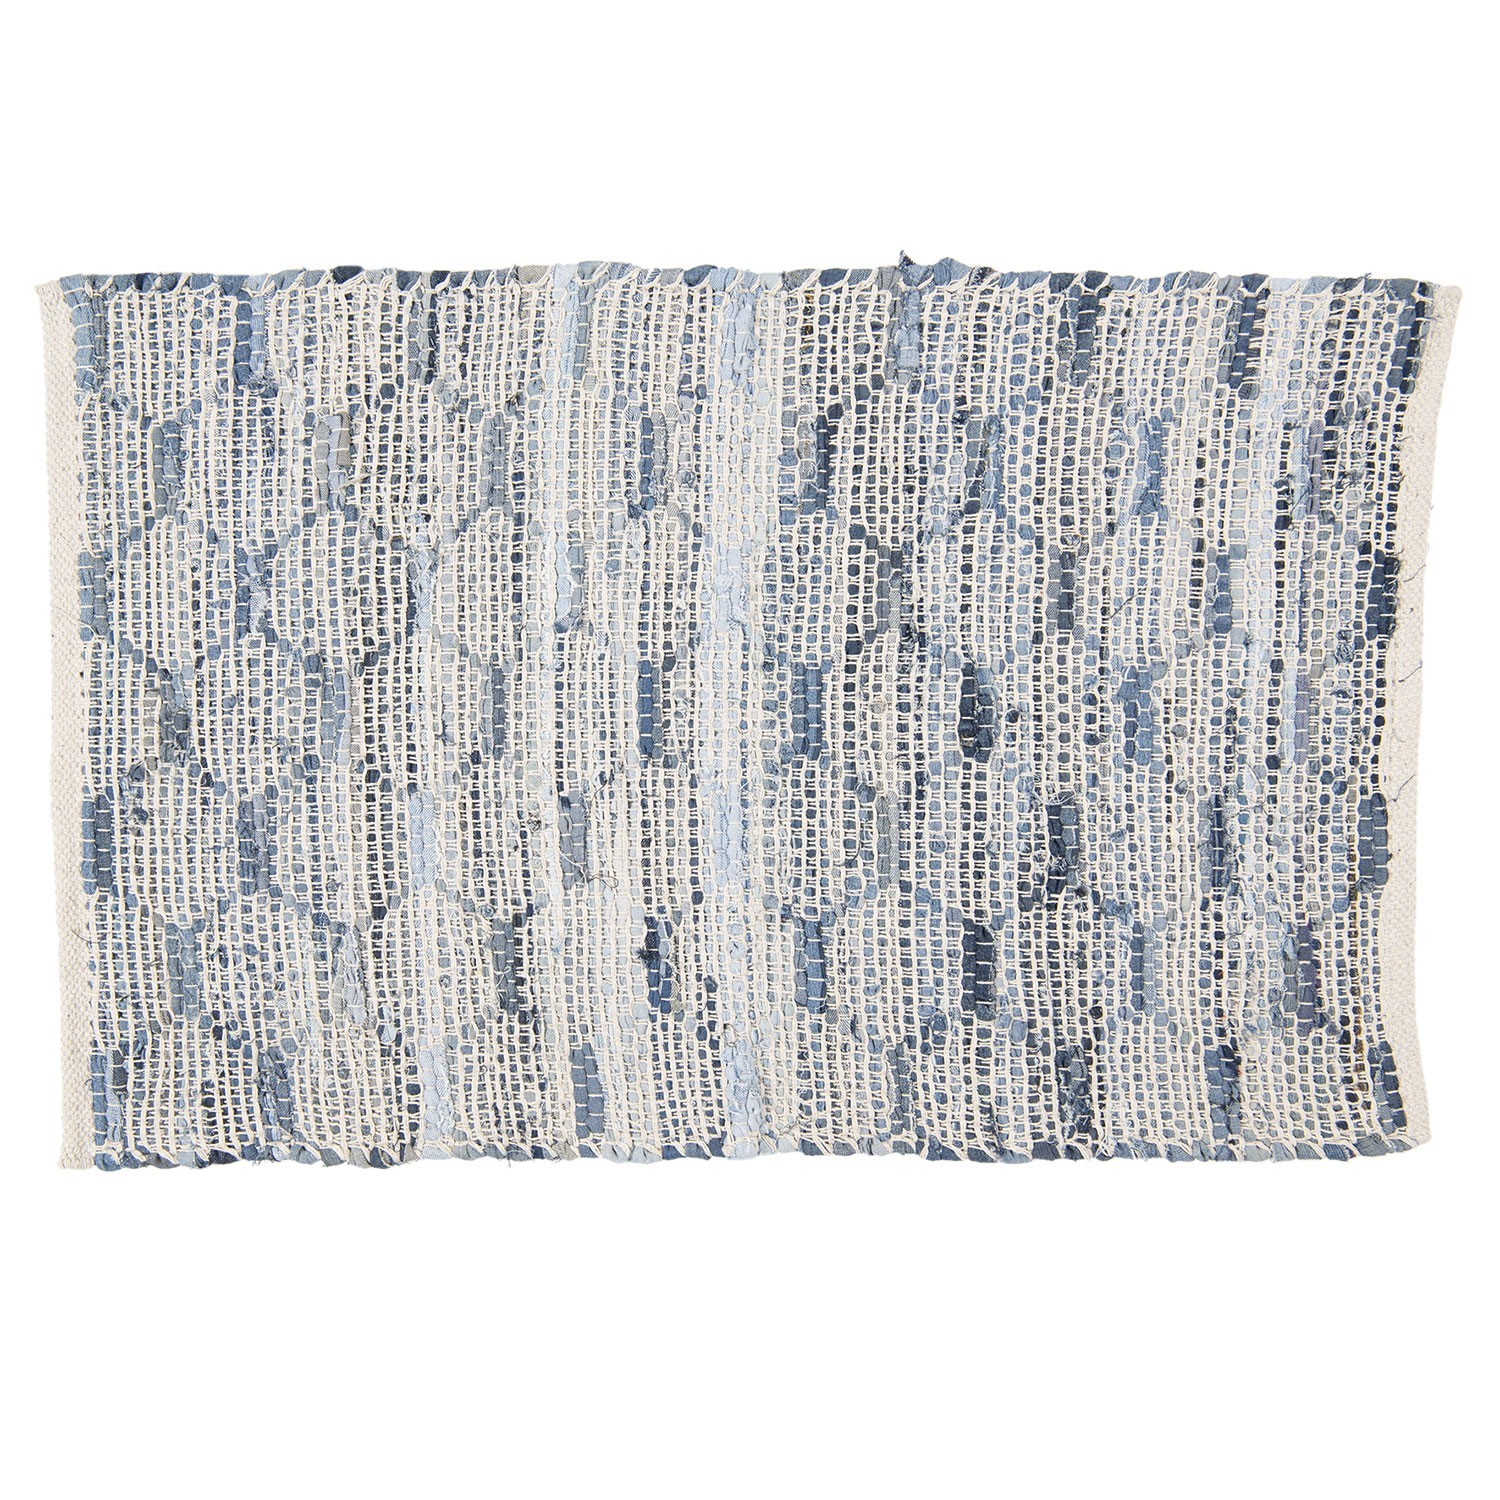 Modrobílý bavlněný koberec s ornamenty a střapci - 60*90 cm KT080.033